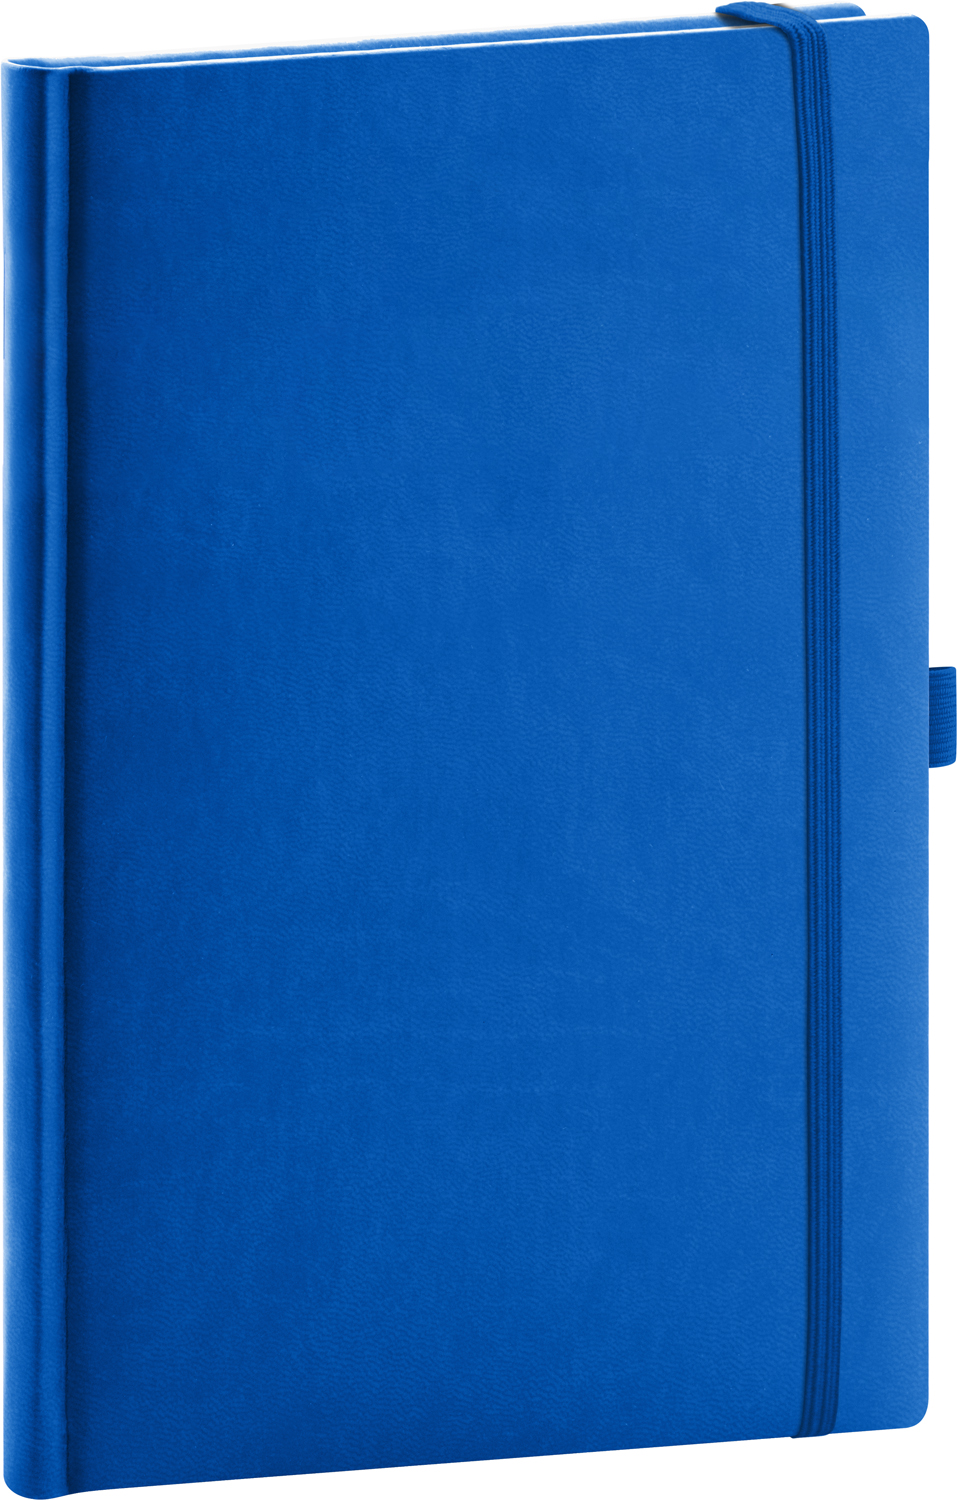 Linkovaný zápisník Aprint, A5 - modrá